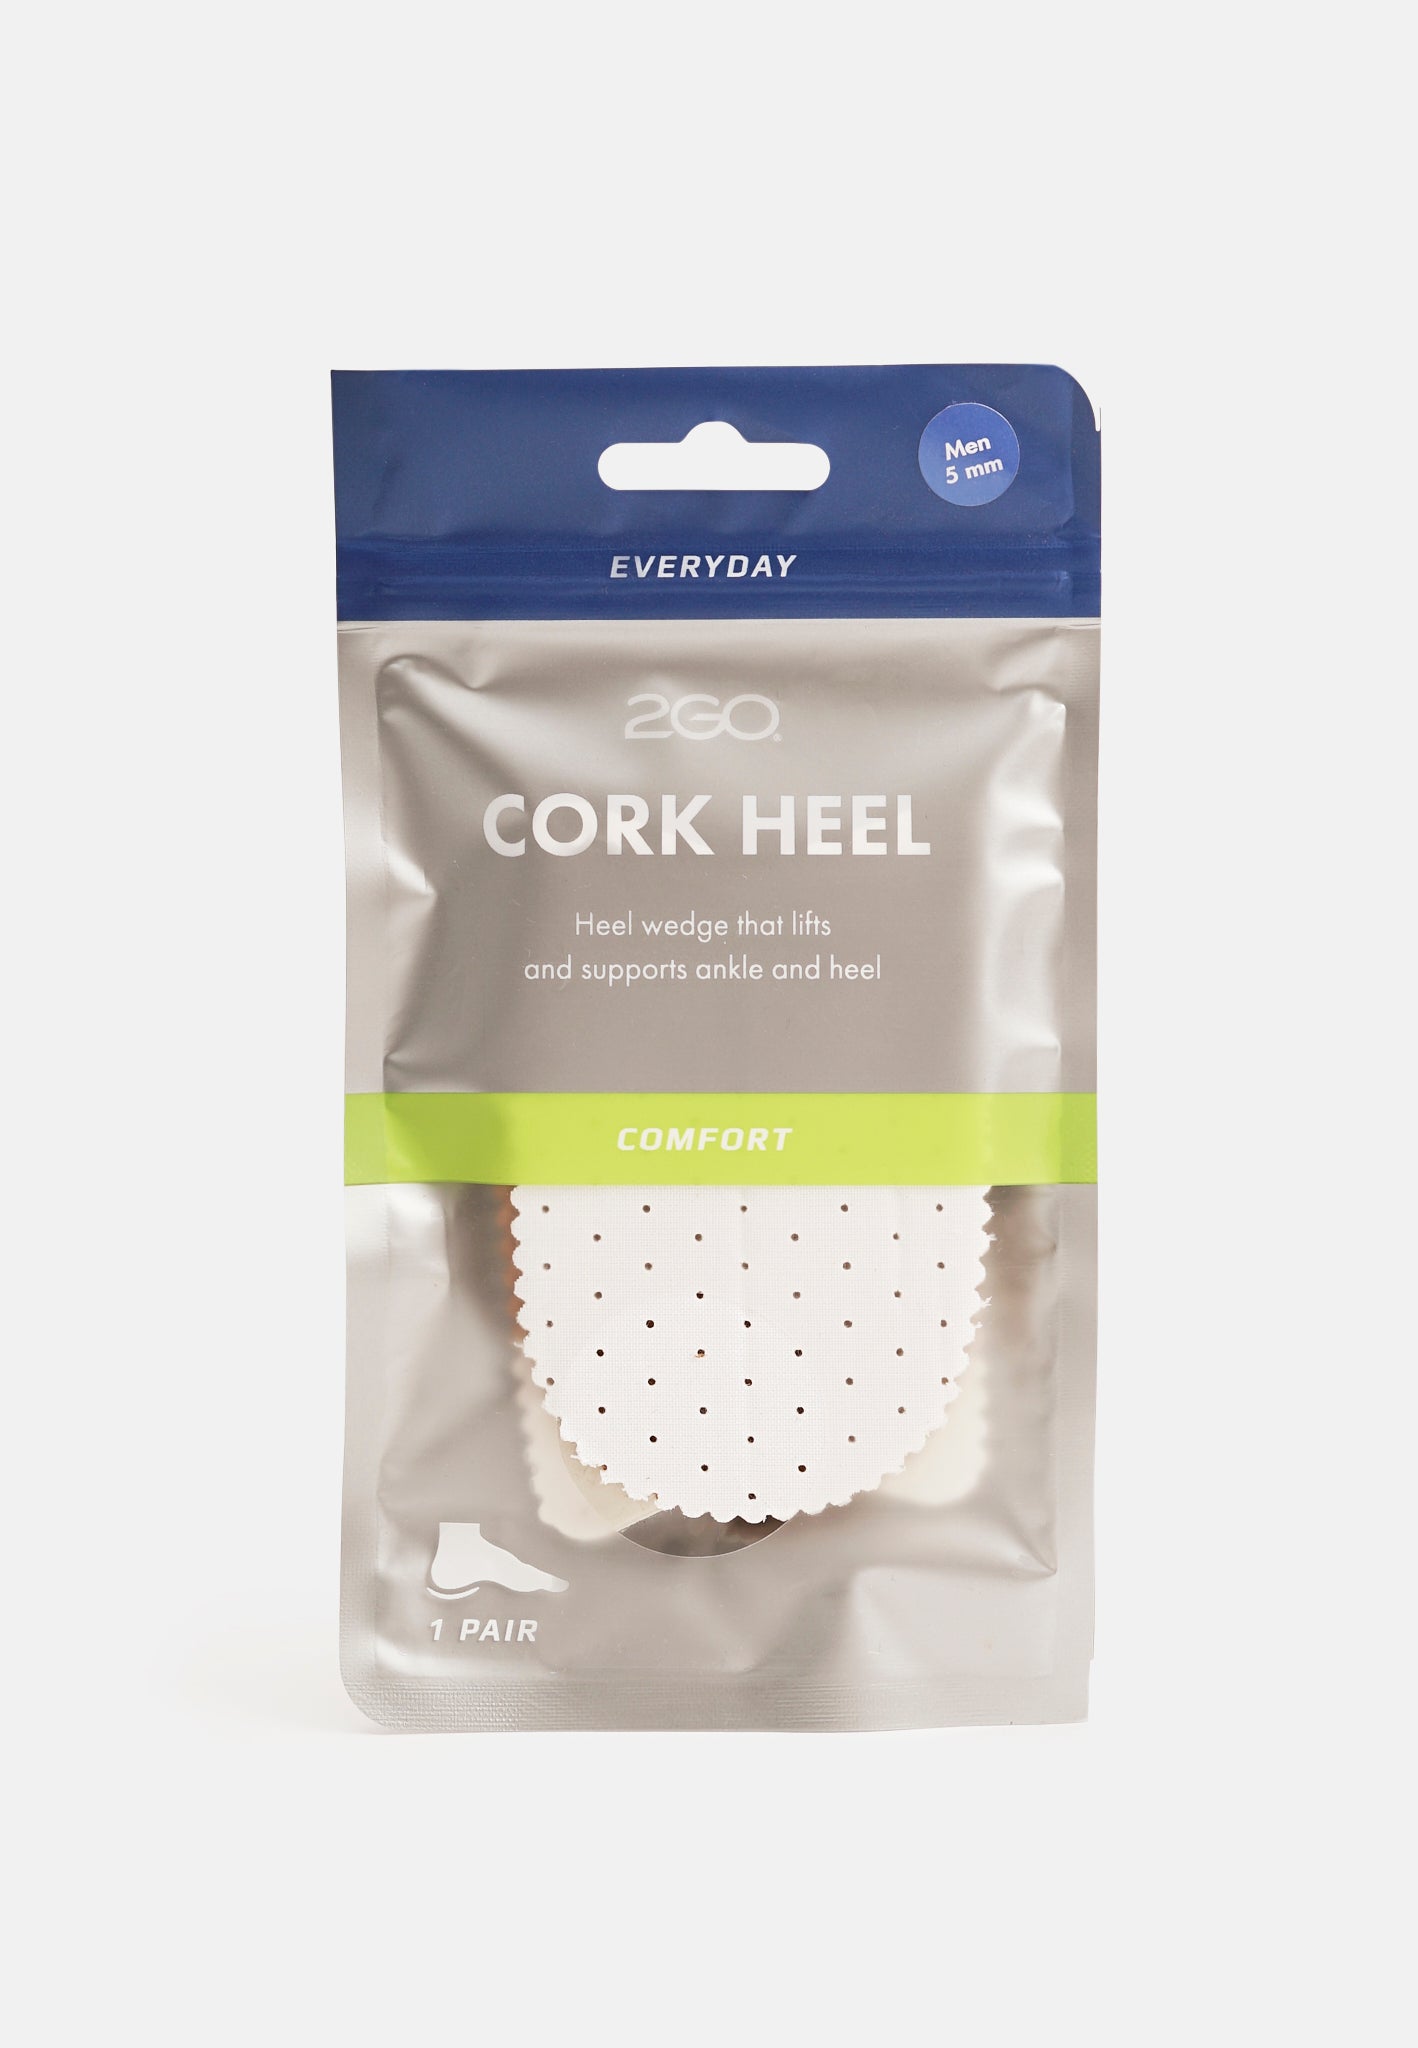 Cork heel